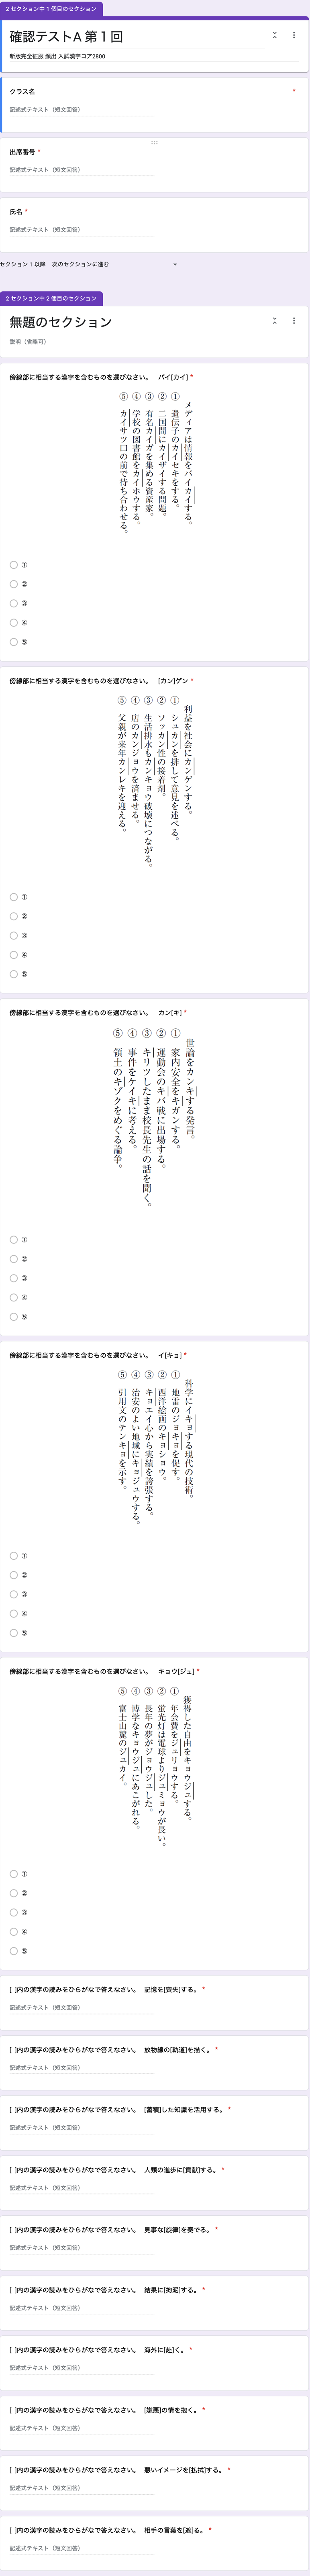 Google Forms テストお申し込みフォーム 桐原書店